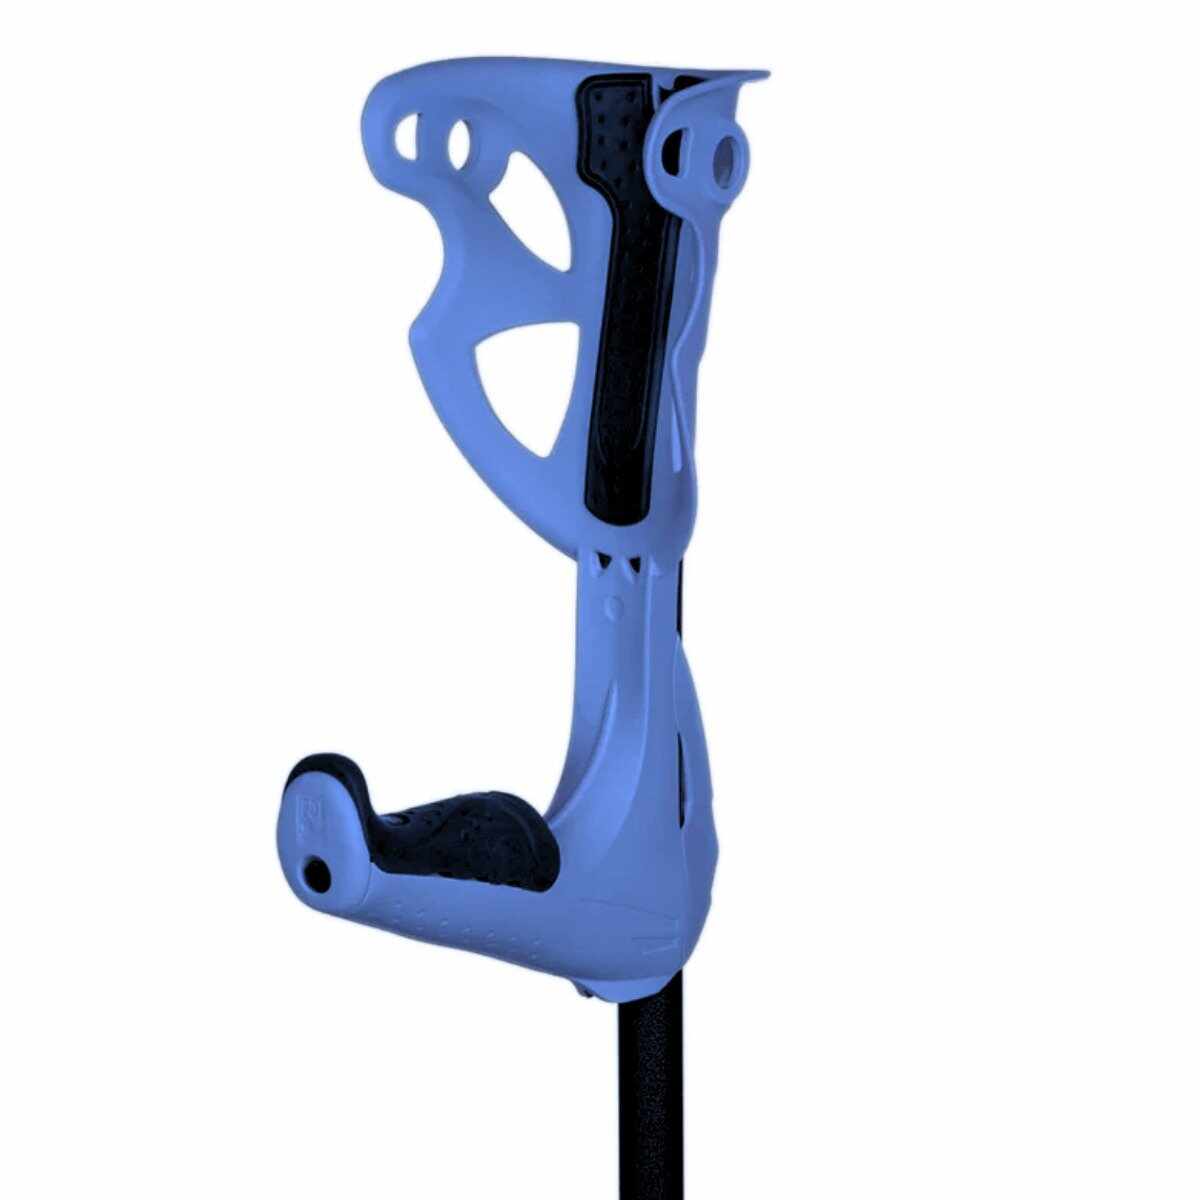 Carja ergonomica Premium albastra, 1 bucata